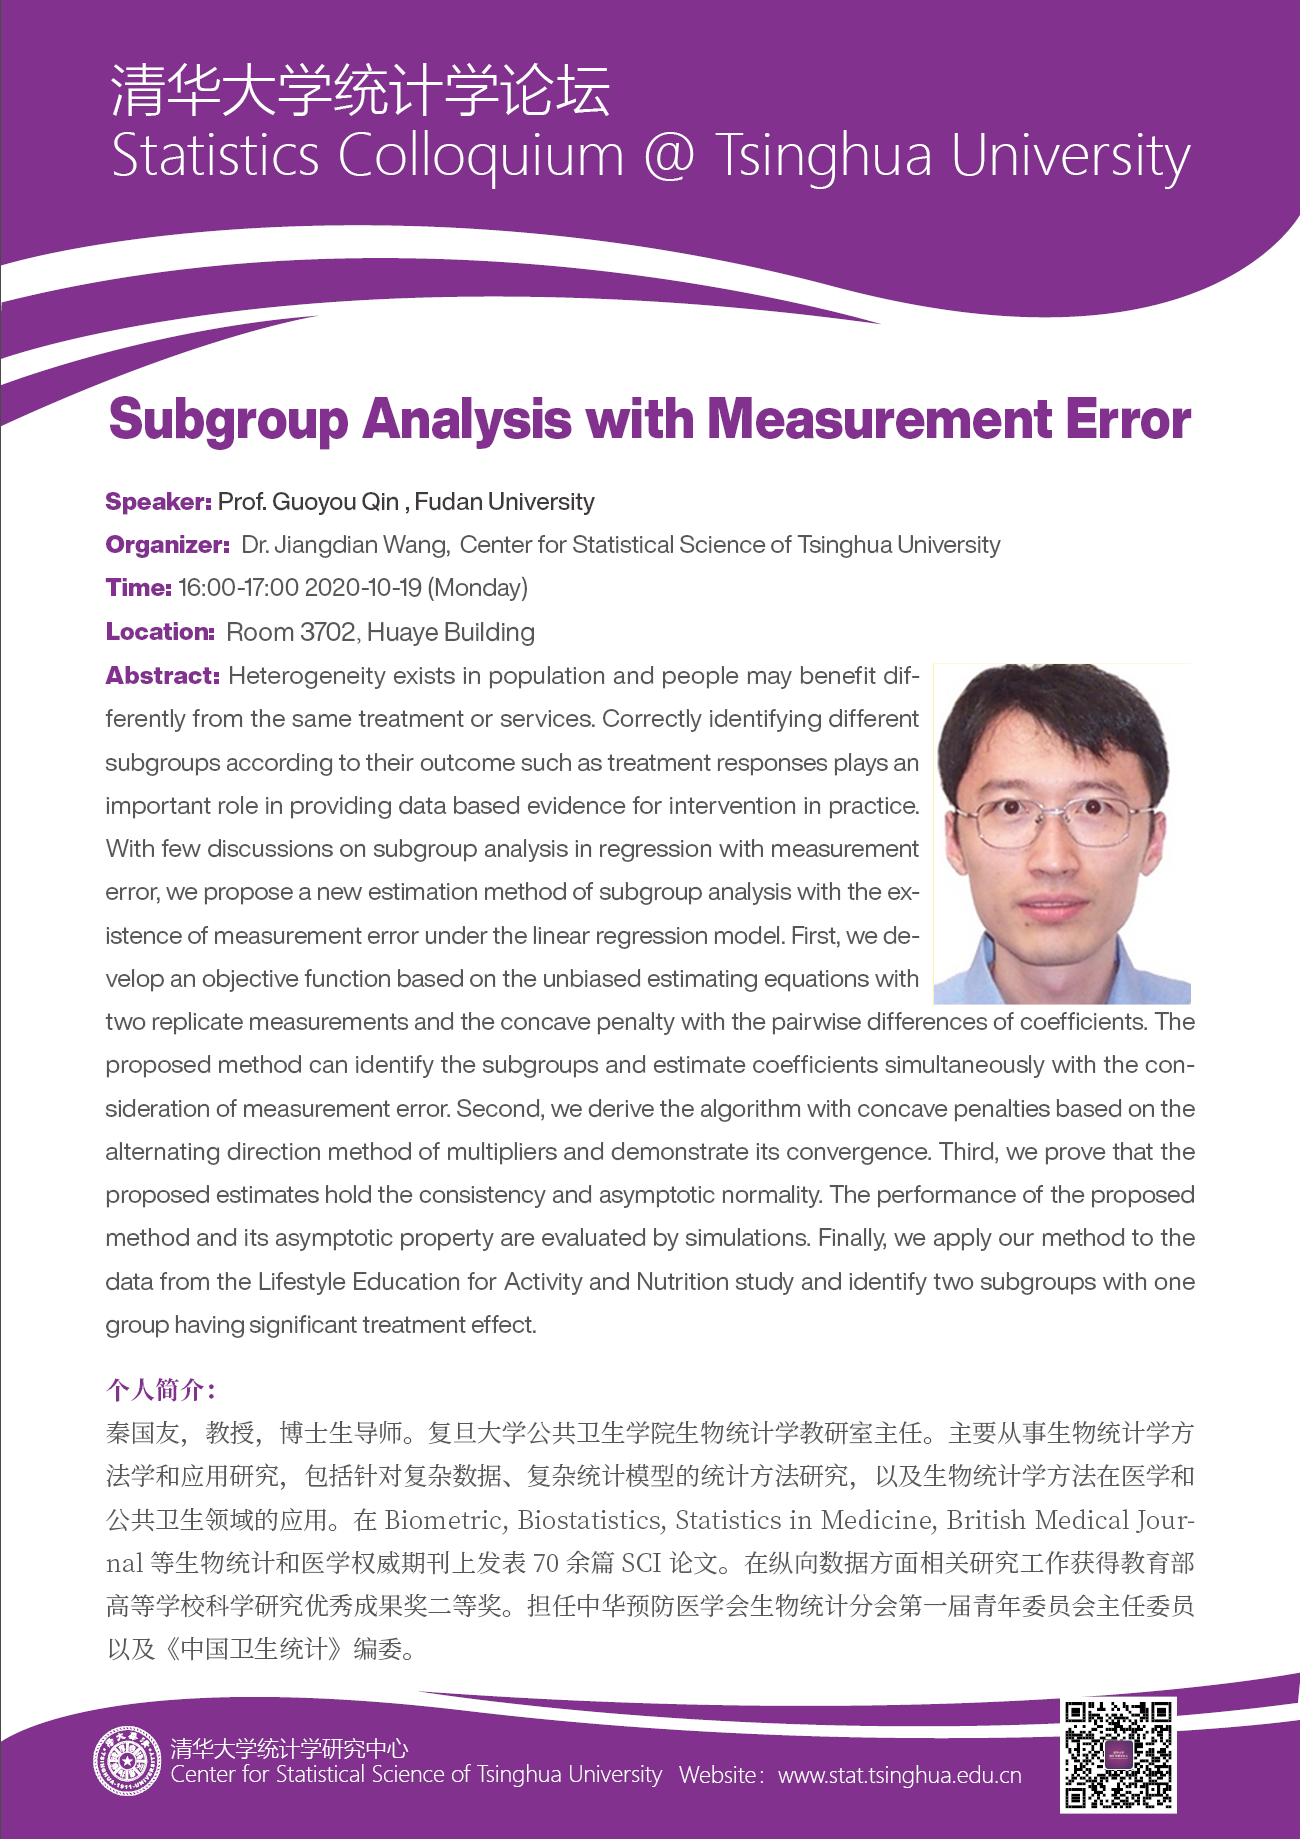 【统计学论坛】Subgroup Analysis with Measurement Error